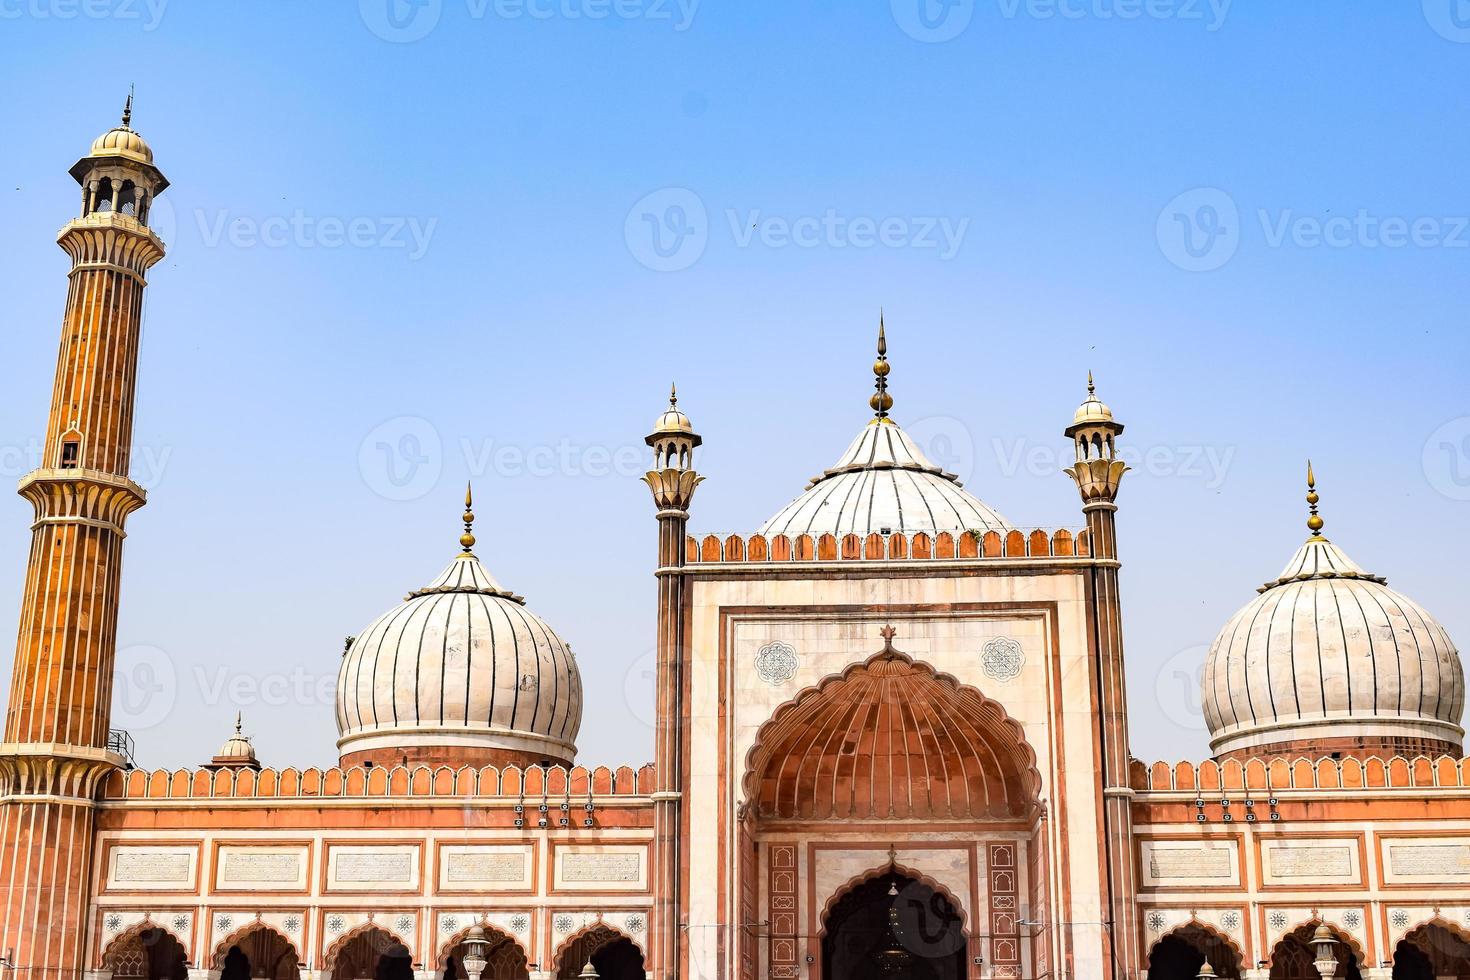 dettaglio architettonico della moschea jama masjid, india, la spettacolare architettura della grande moschea del venerdì jama masjid a delhi 6 durante la stagione ramzan, la moschea più importante dell'india foto